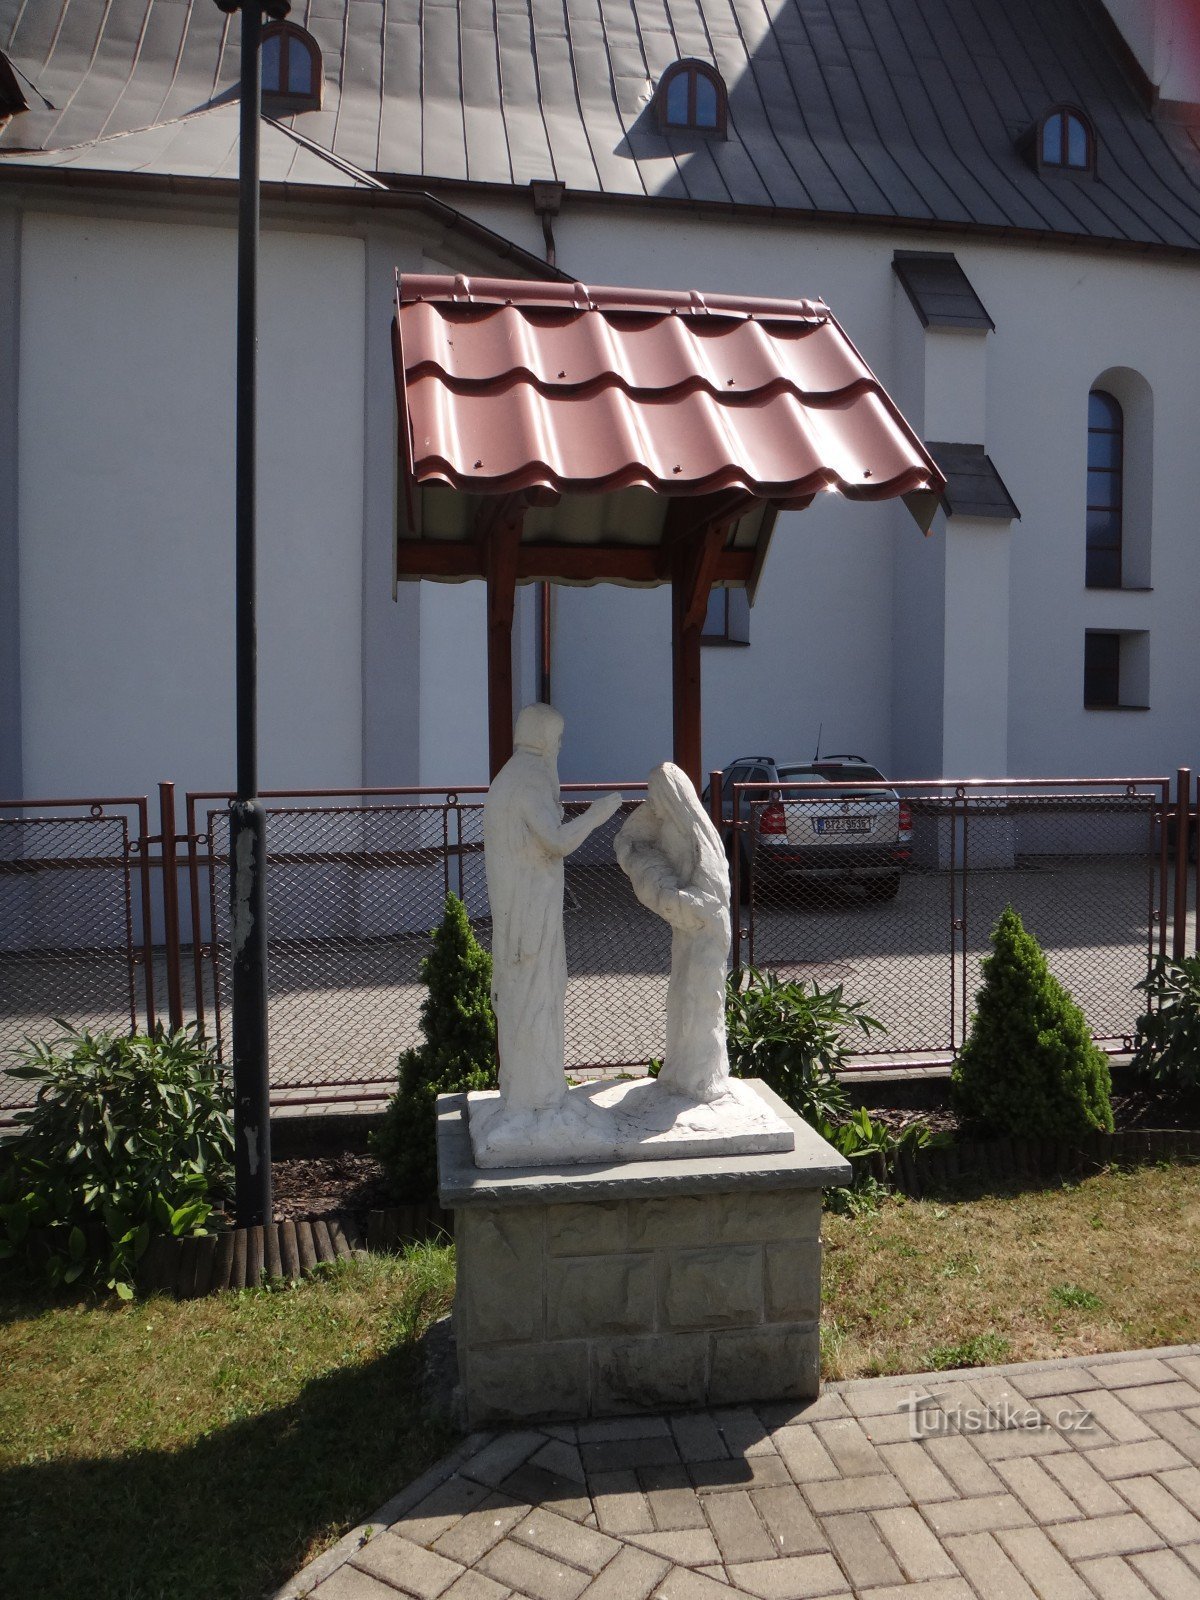 Jablunkov, đây là cách các tác phẩm điêu khắc trong khu vườn giáo xứ được tạo ra